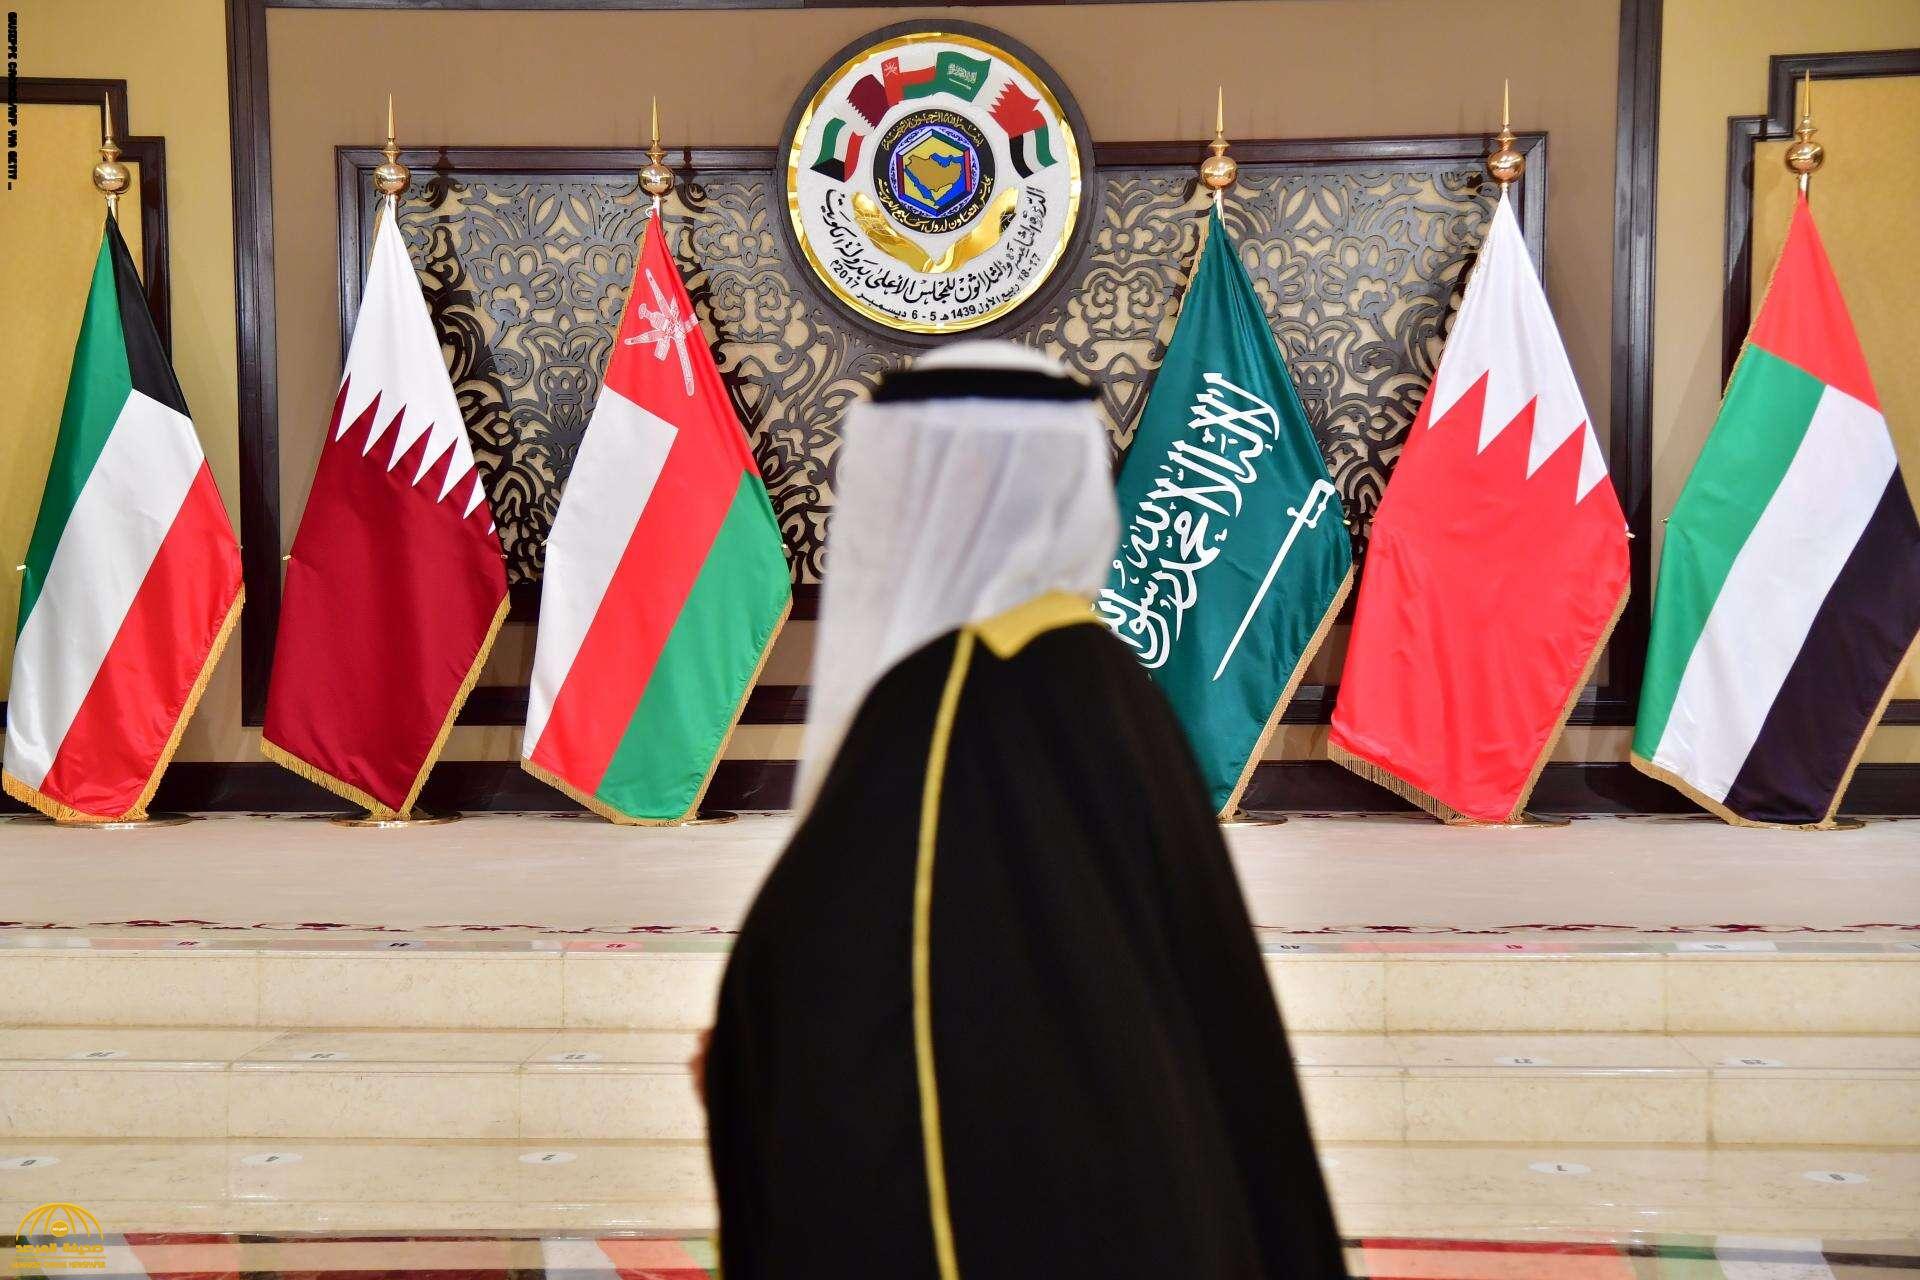 وكالة "بلومبيرغ" تكشف عن تفاصيل صفقة أولية لإنهاء المقاطعة بين السعودية وقطر